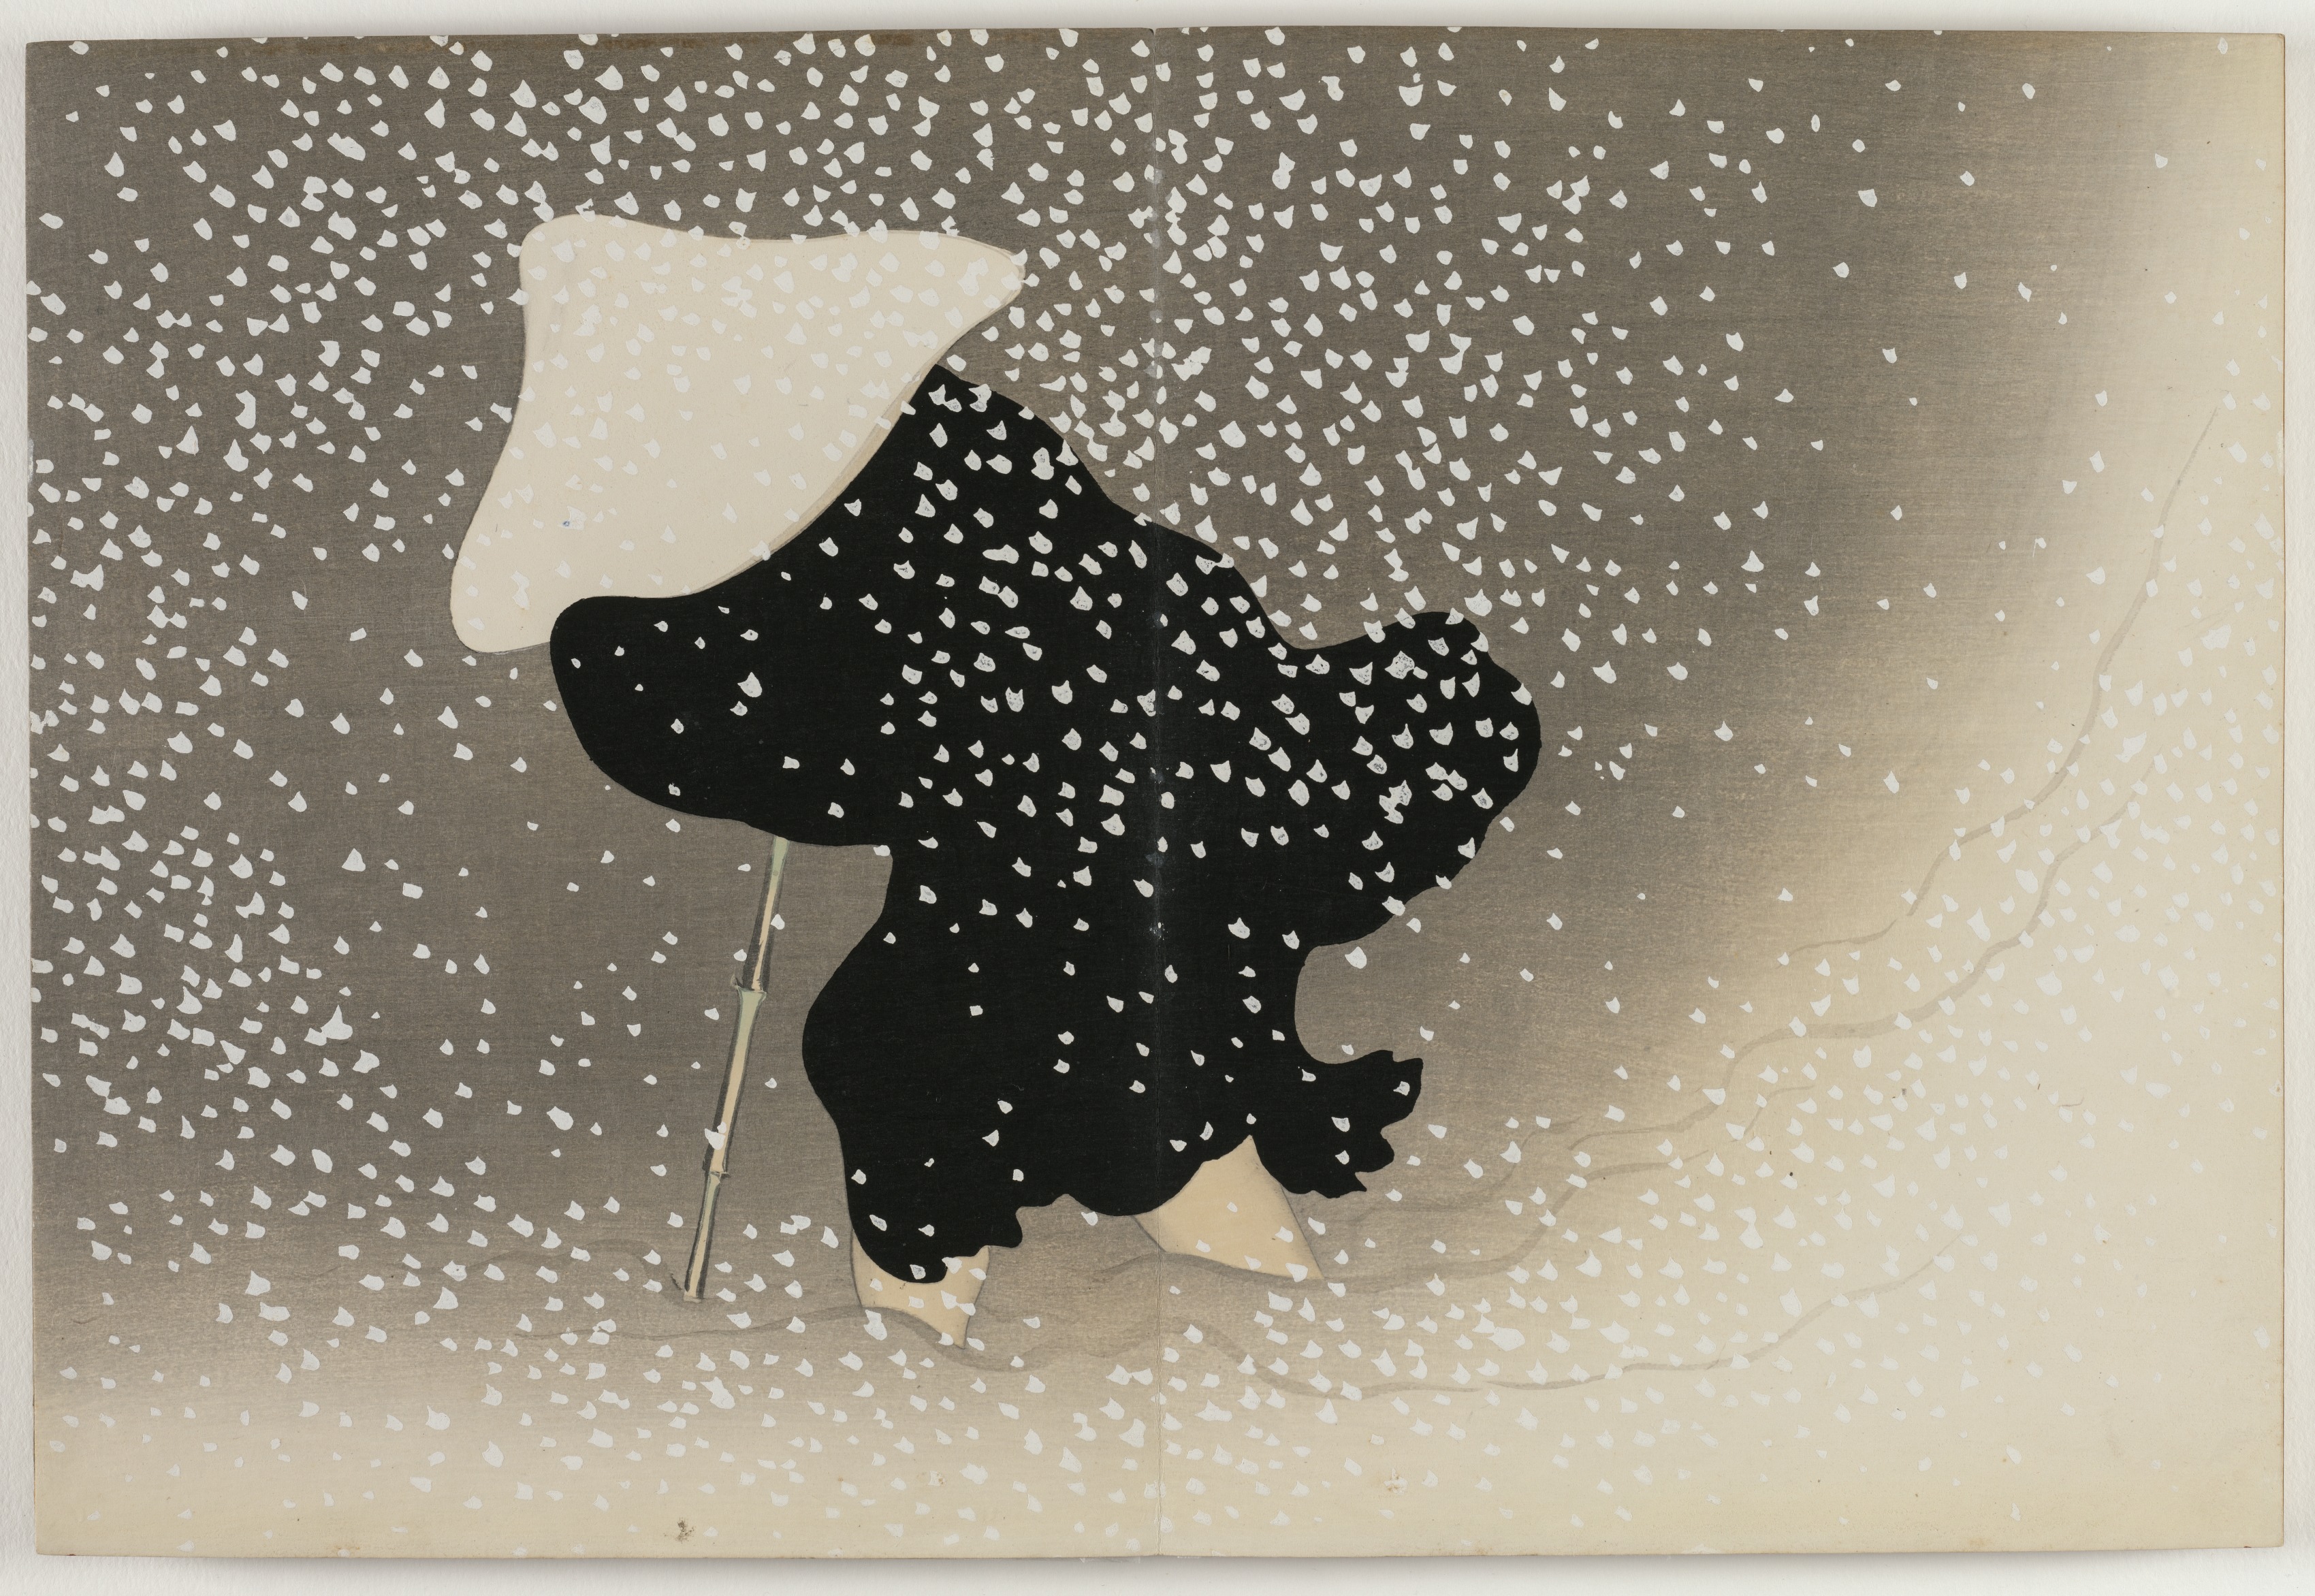 百々世草 巴の雪 by Kamisaka Sekka - 1909〜10年 - 29.9 x 22.1 cm 